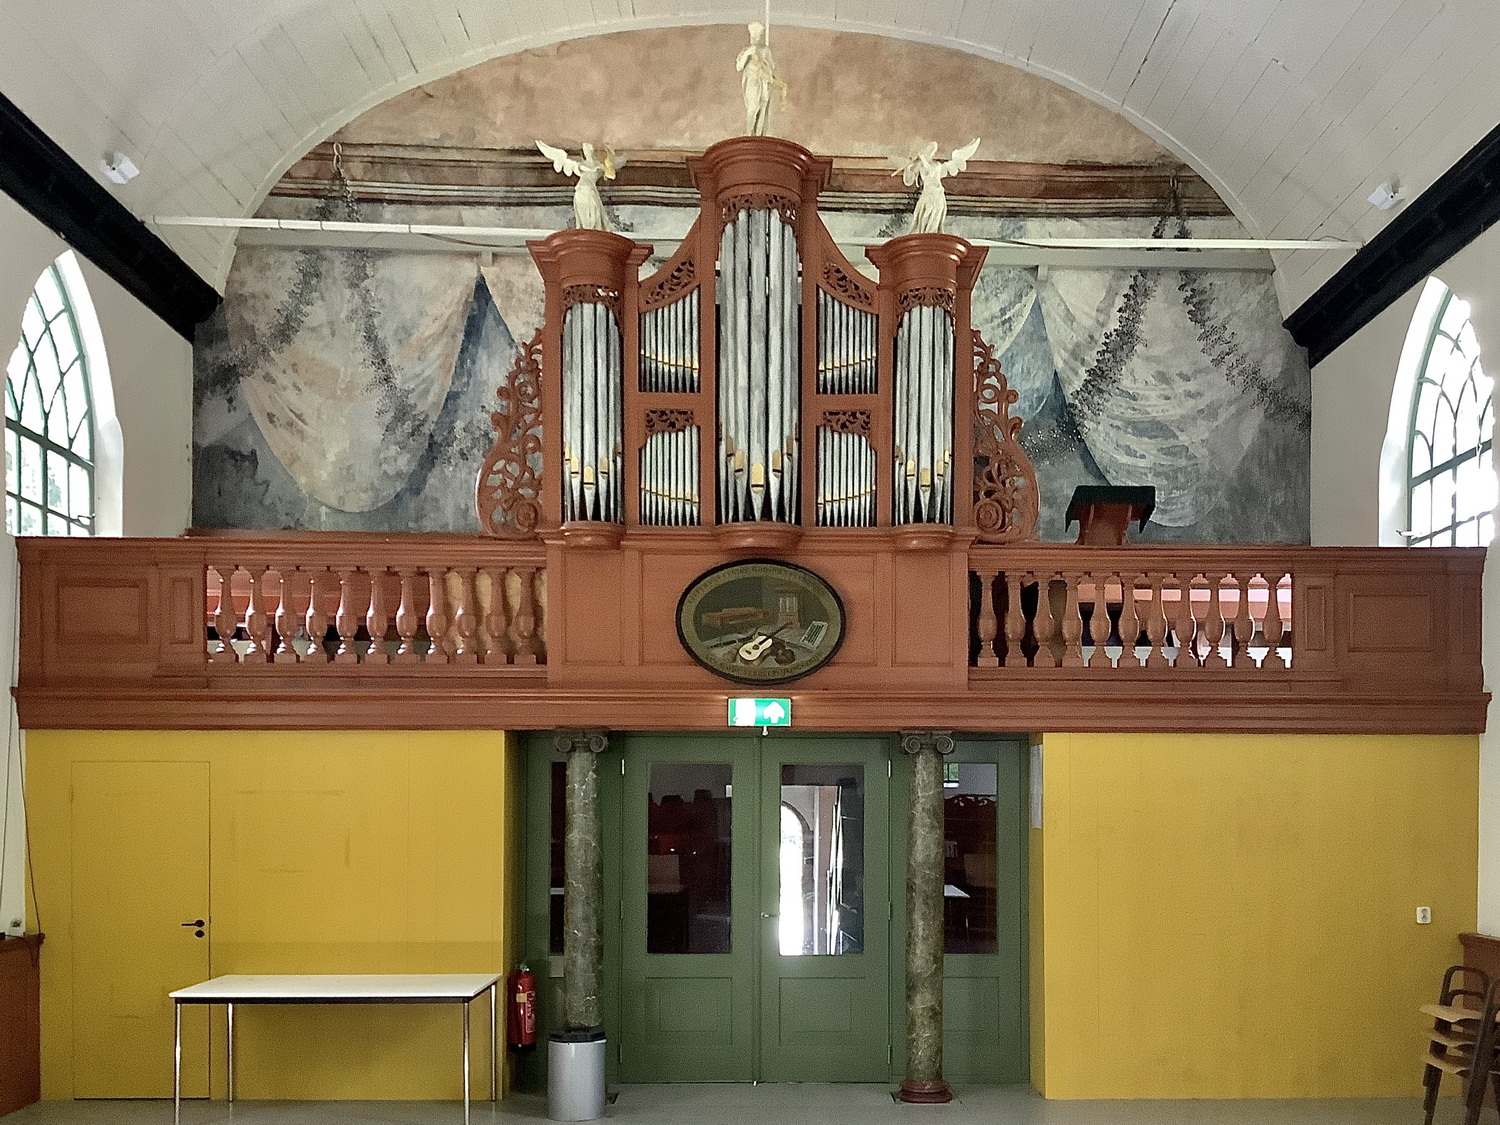 Het 18-eeuws orgel uit de kerk van Hornhuizen. Orgelnummer: 724. Foto: ©Jur Kuipers, 2020.